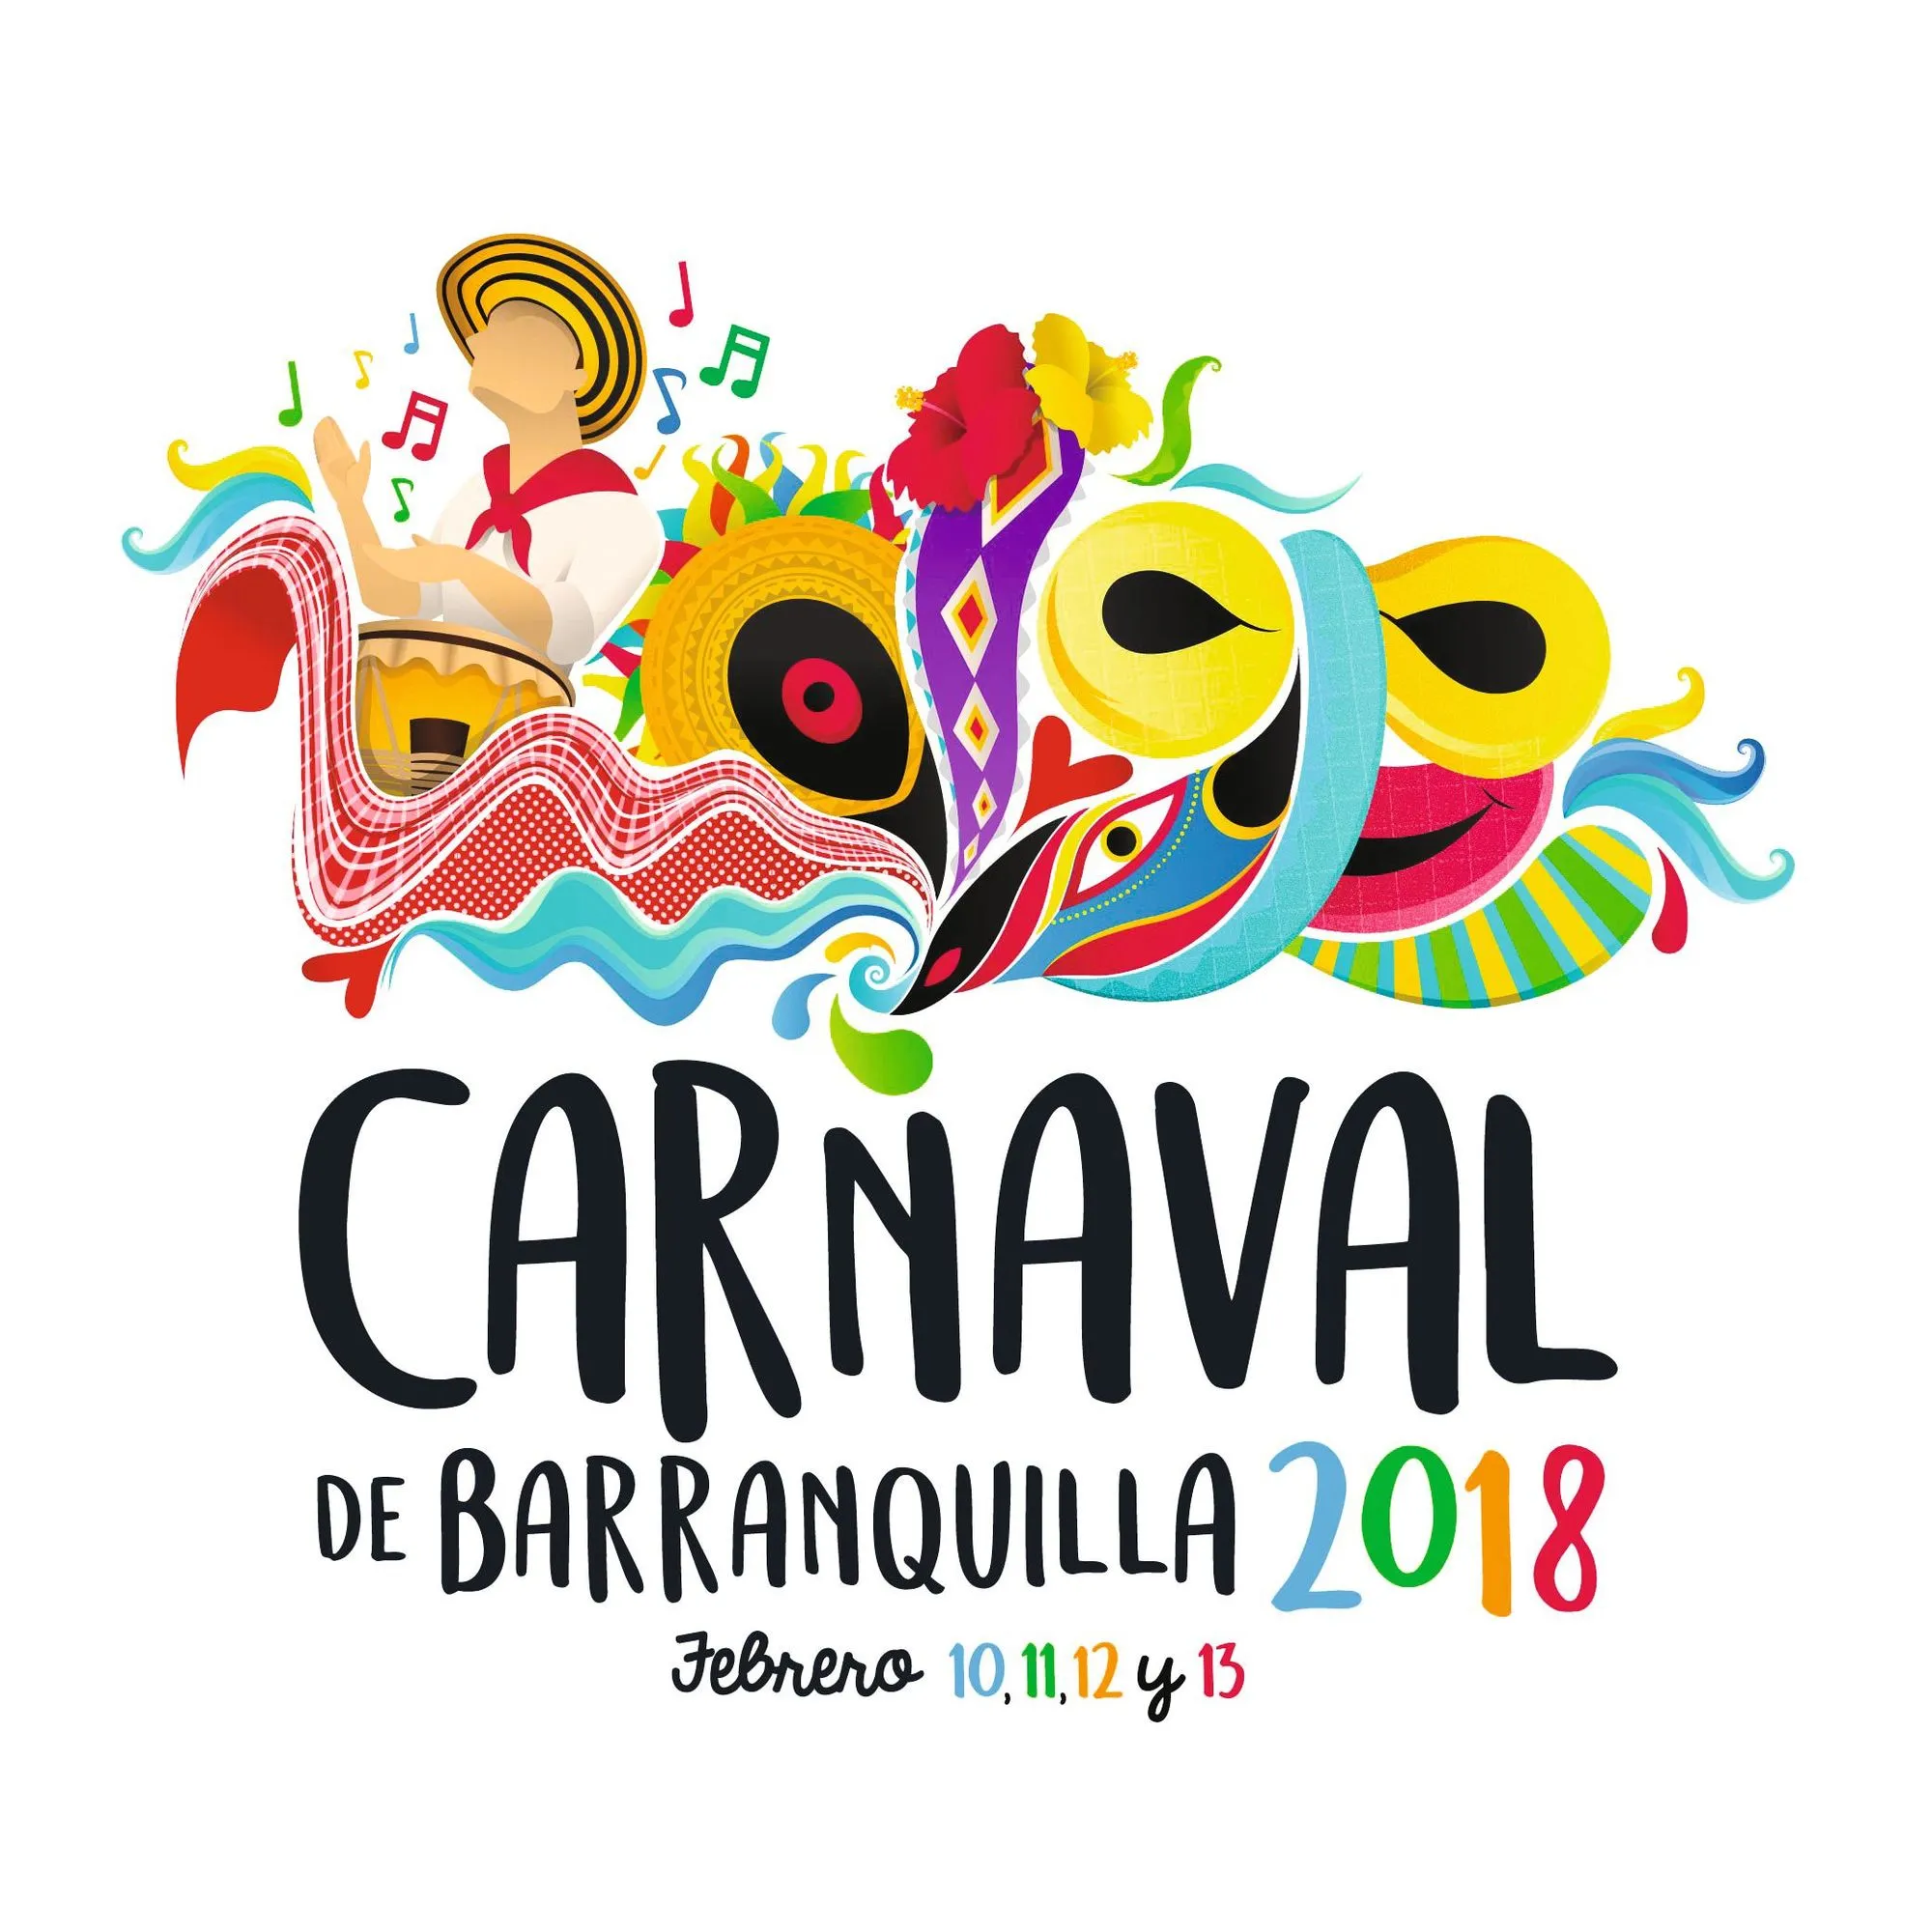 Publicidad para el carnaval de Barranquilla, 2018.